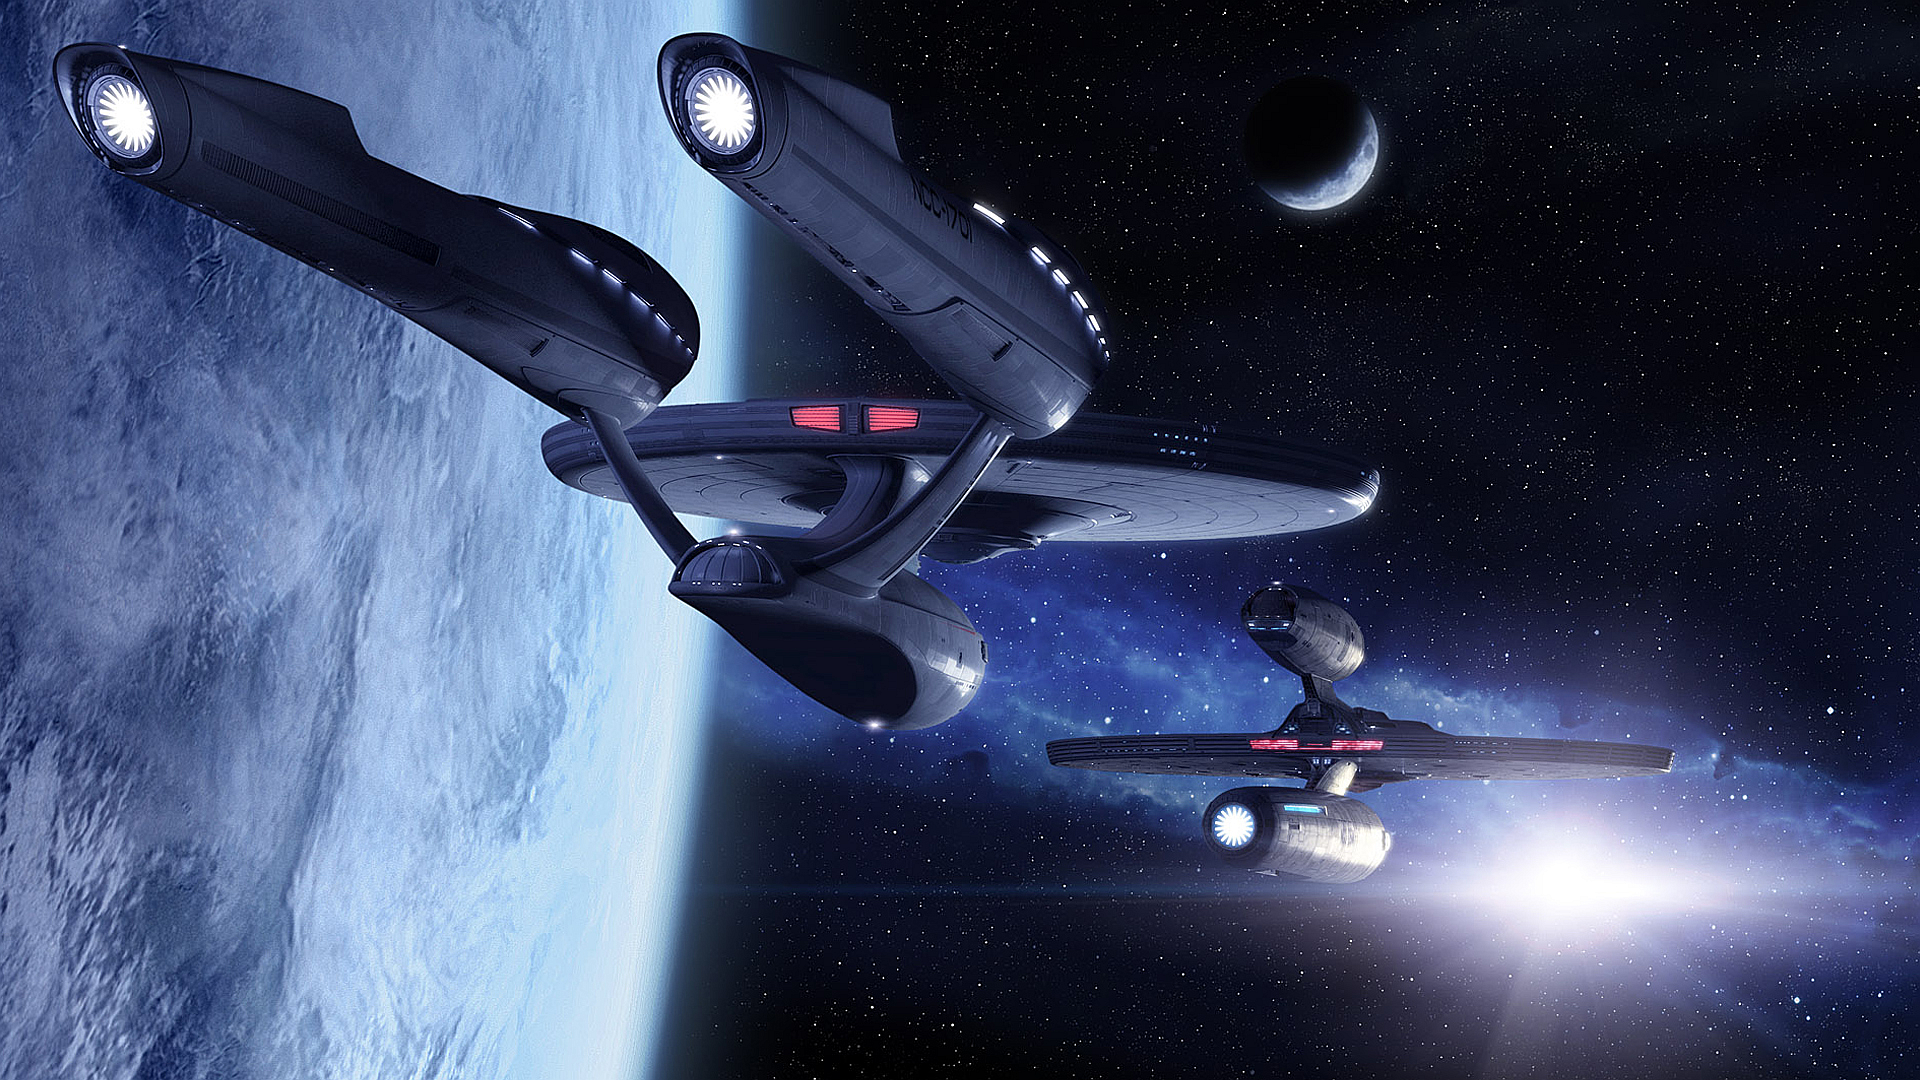 Wallpaper USS Enterprise and USS Kelvin from Star Trek